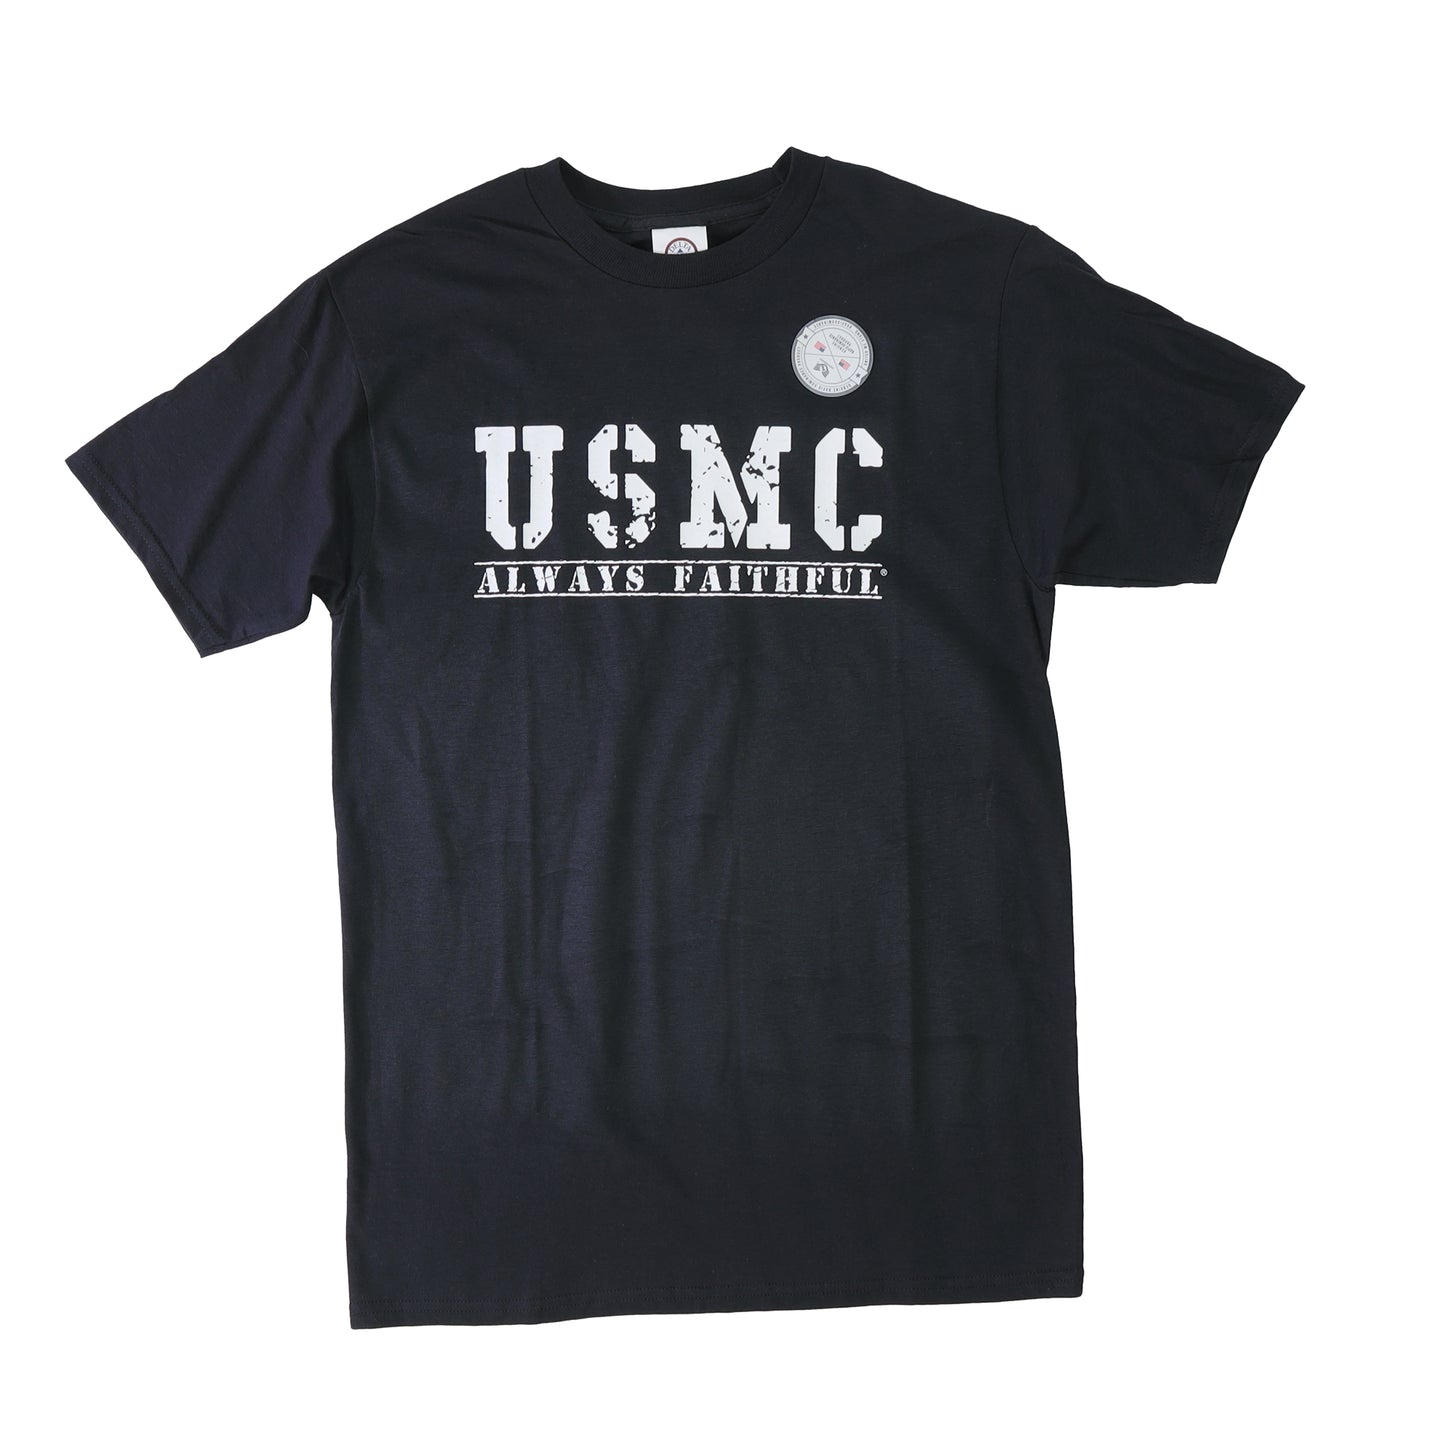 USMC "Always Faithful" Cotton T-shirt RDT68